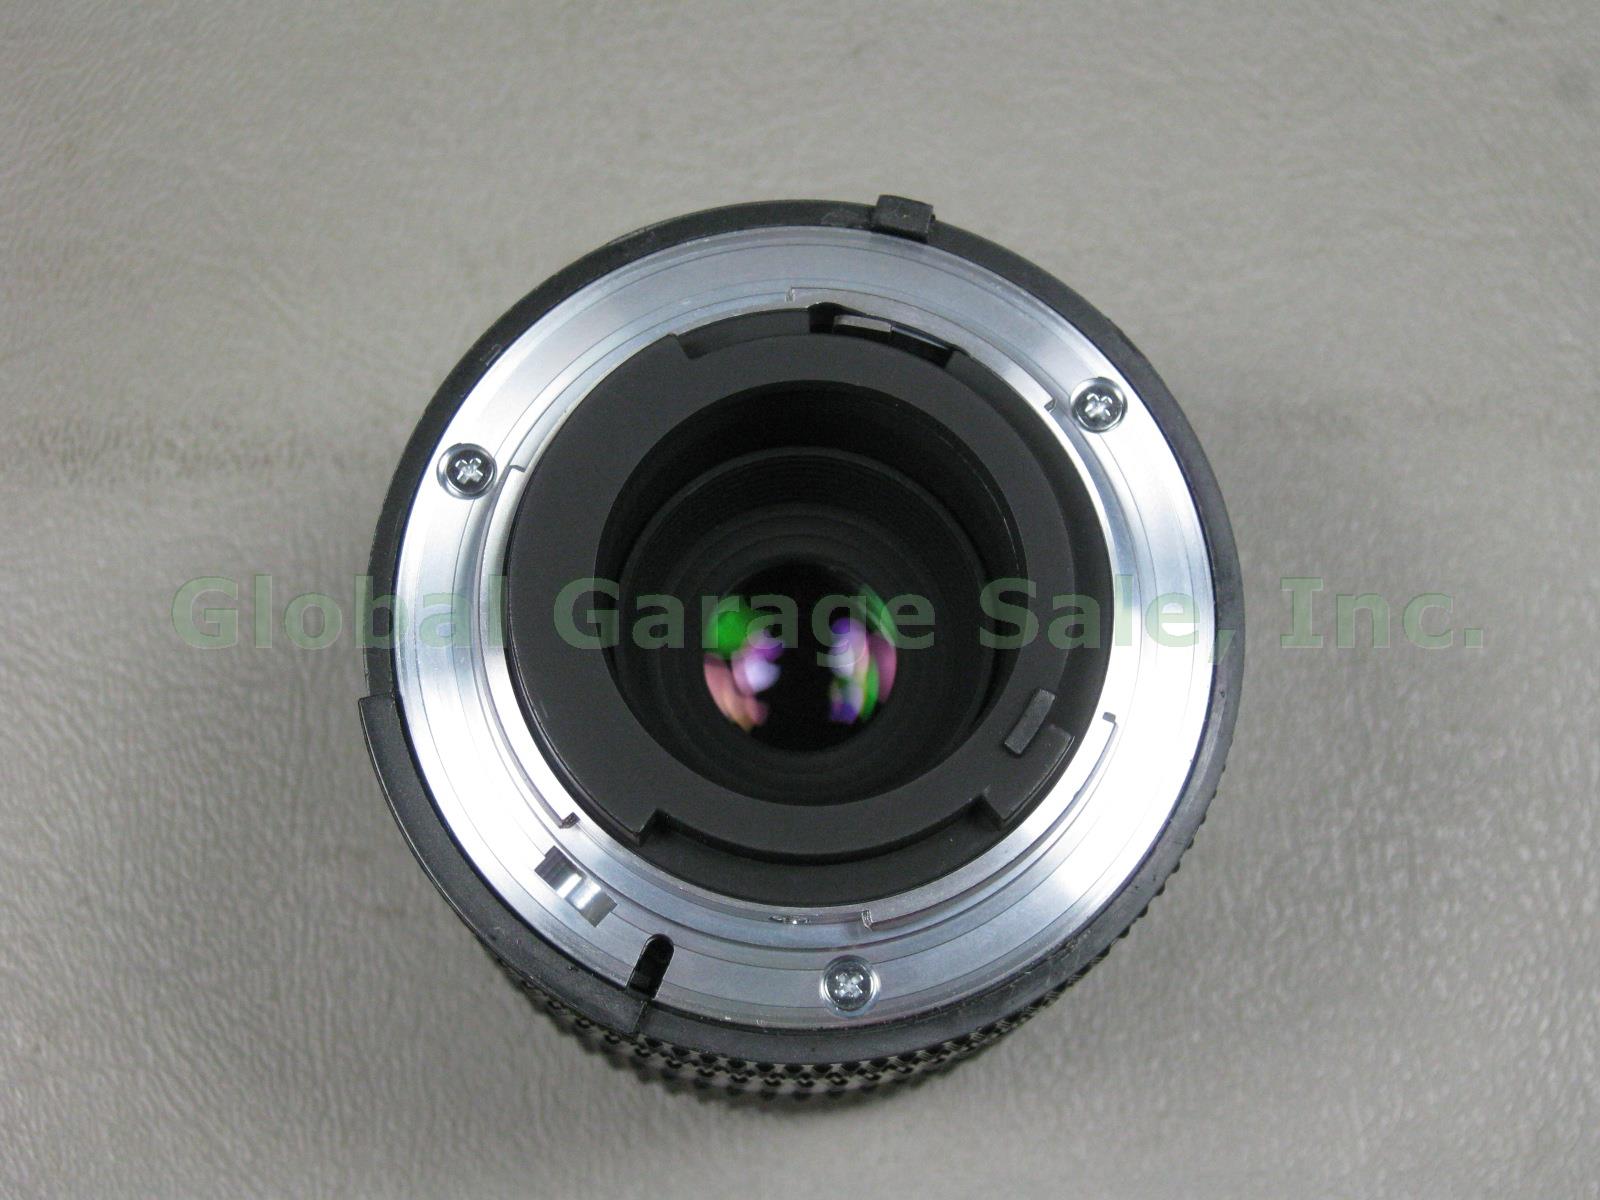 Nikon FM10 35mm SLR Film Camera Zoom Nikkor 35-70mm 1:3.5~4.8 Lens Case Bundle 7